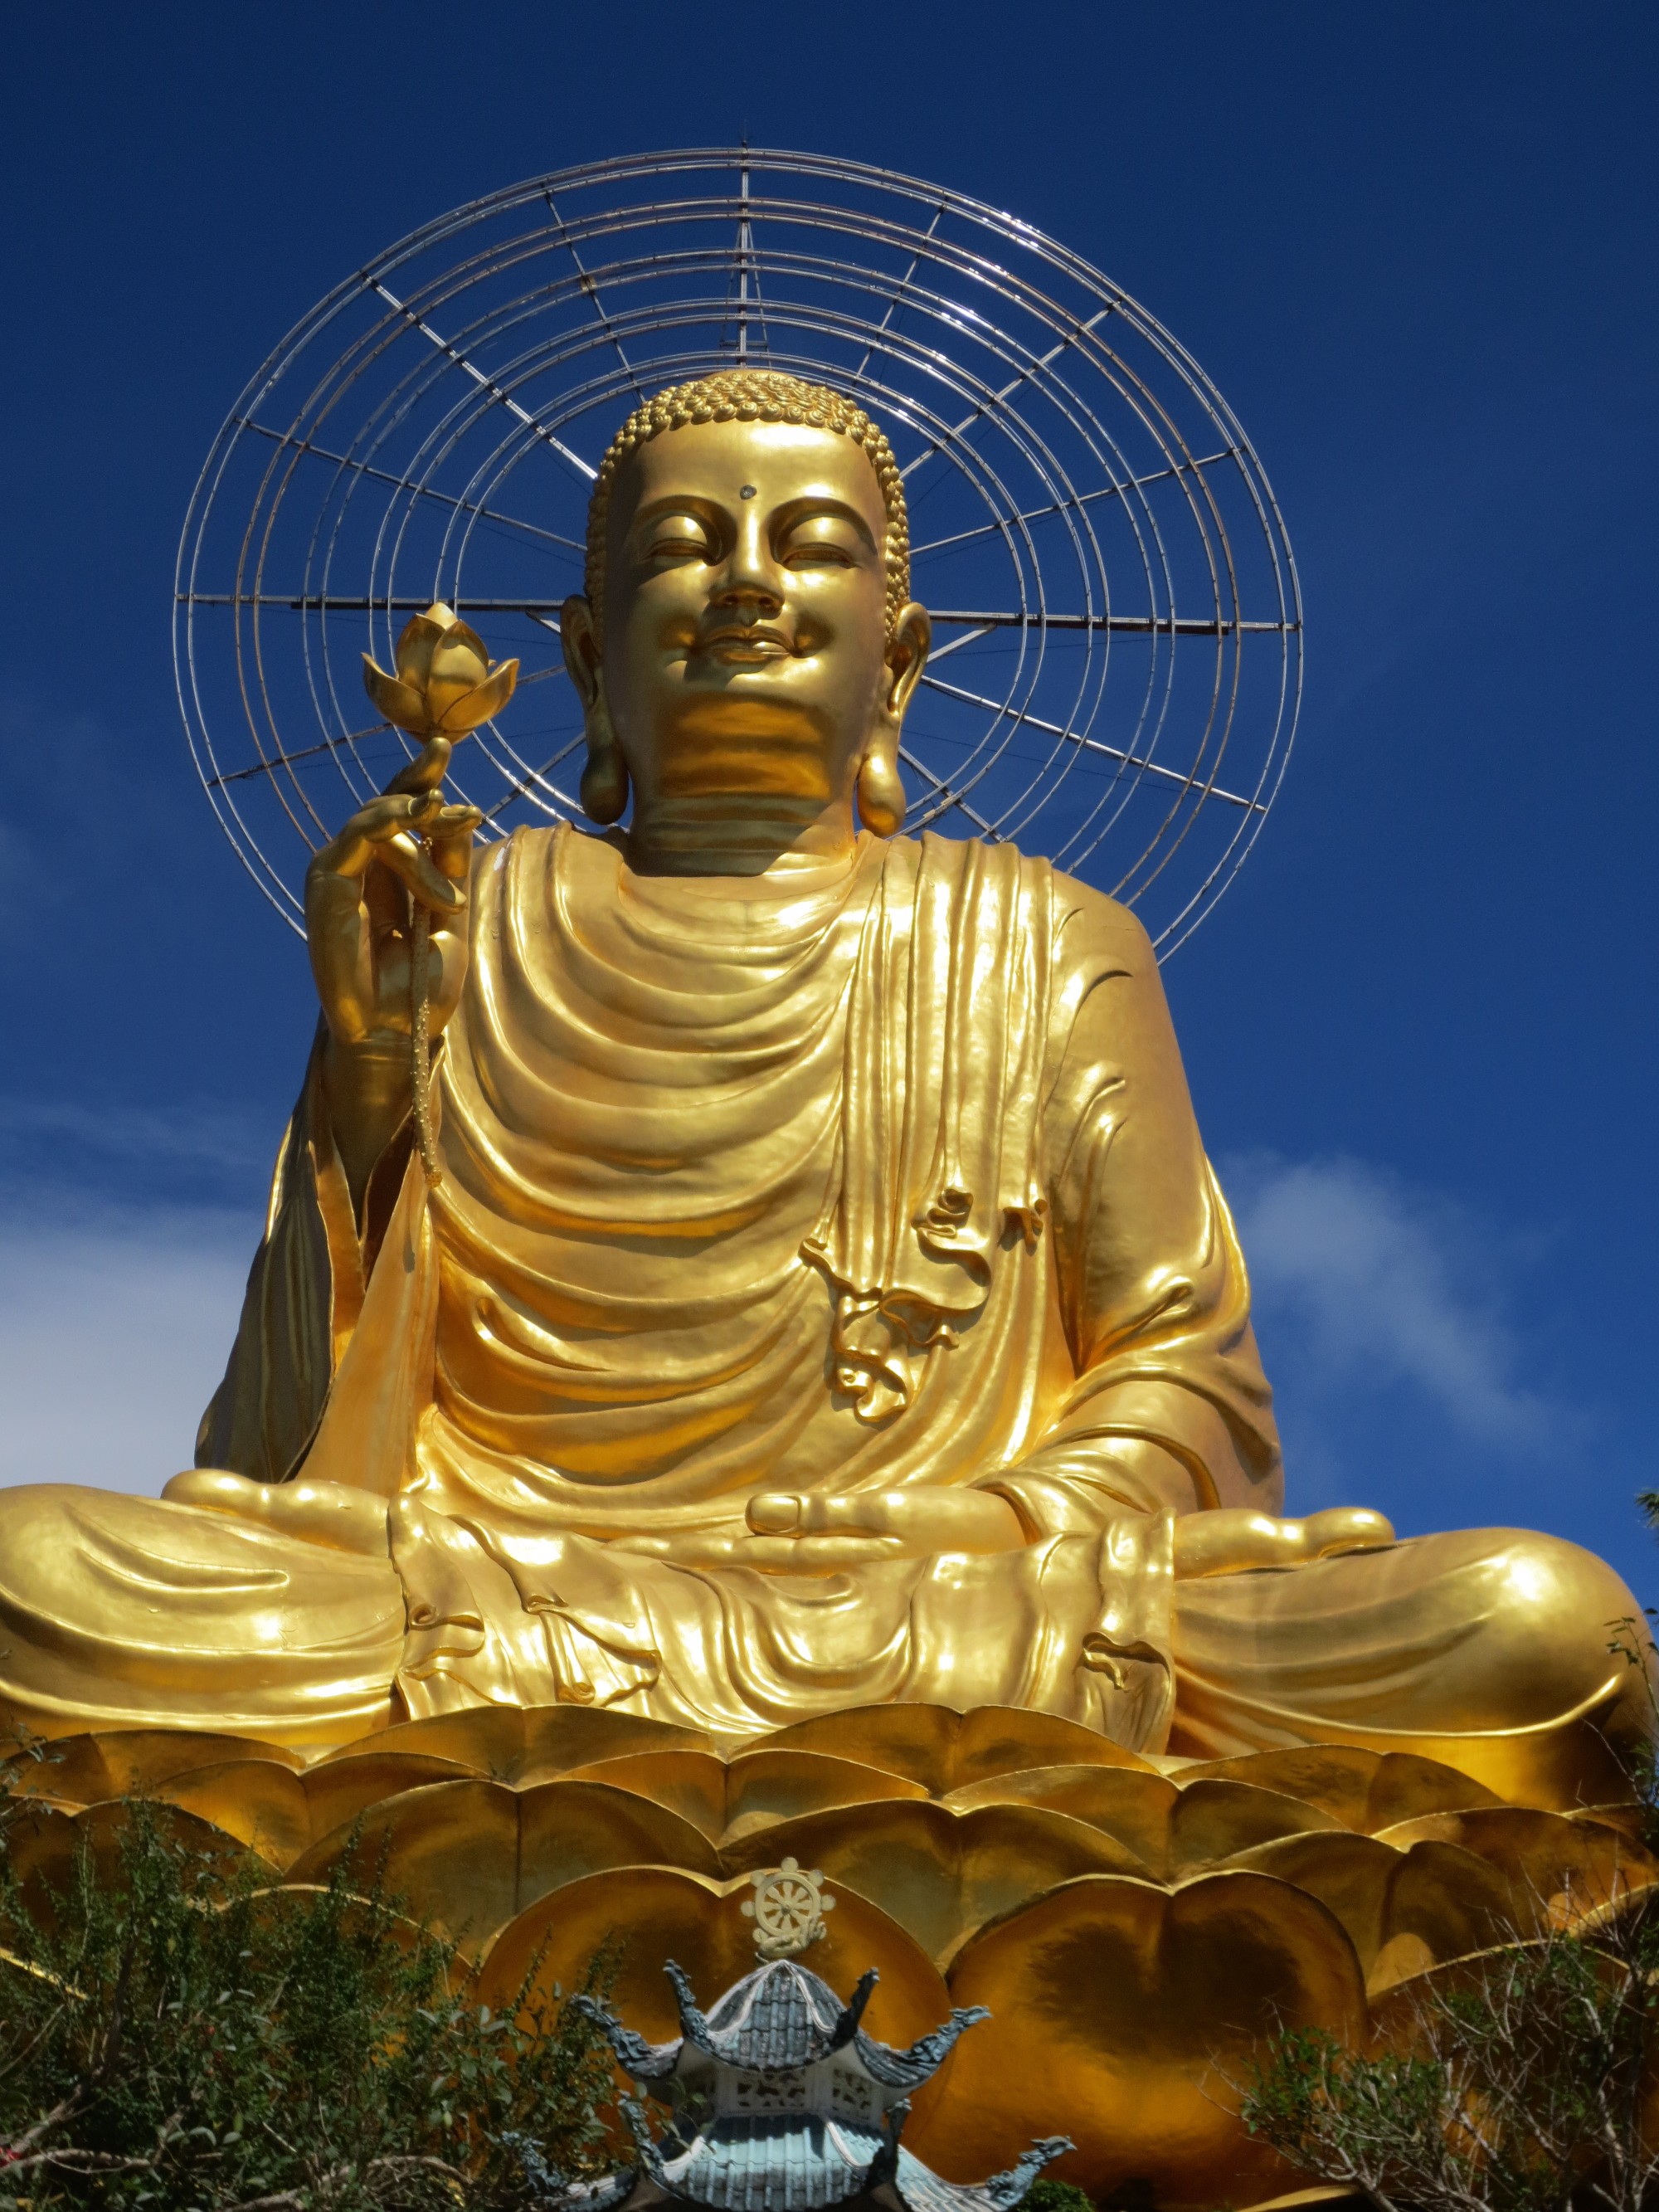 Бронзовая статуя Будды Шакьямуни. Она была построена в 2002 году на одном из самых высоких мест Далата, что дает возможность наблюдать ее из разных уголков города. Высота бронзового Будды весом в 1250 килограмм достигает 24 метра